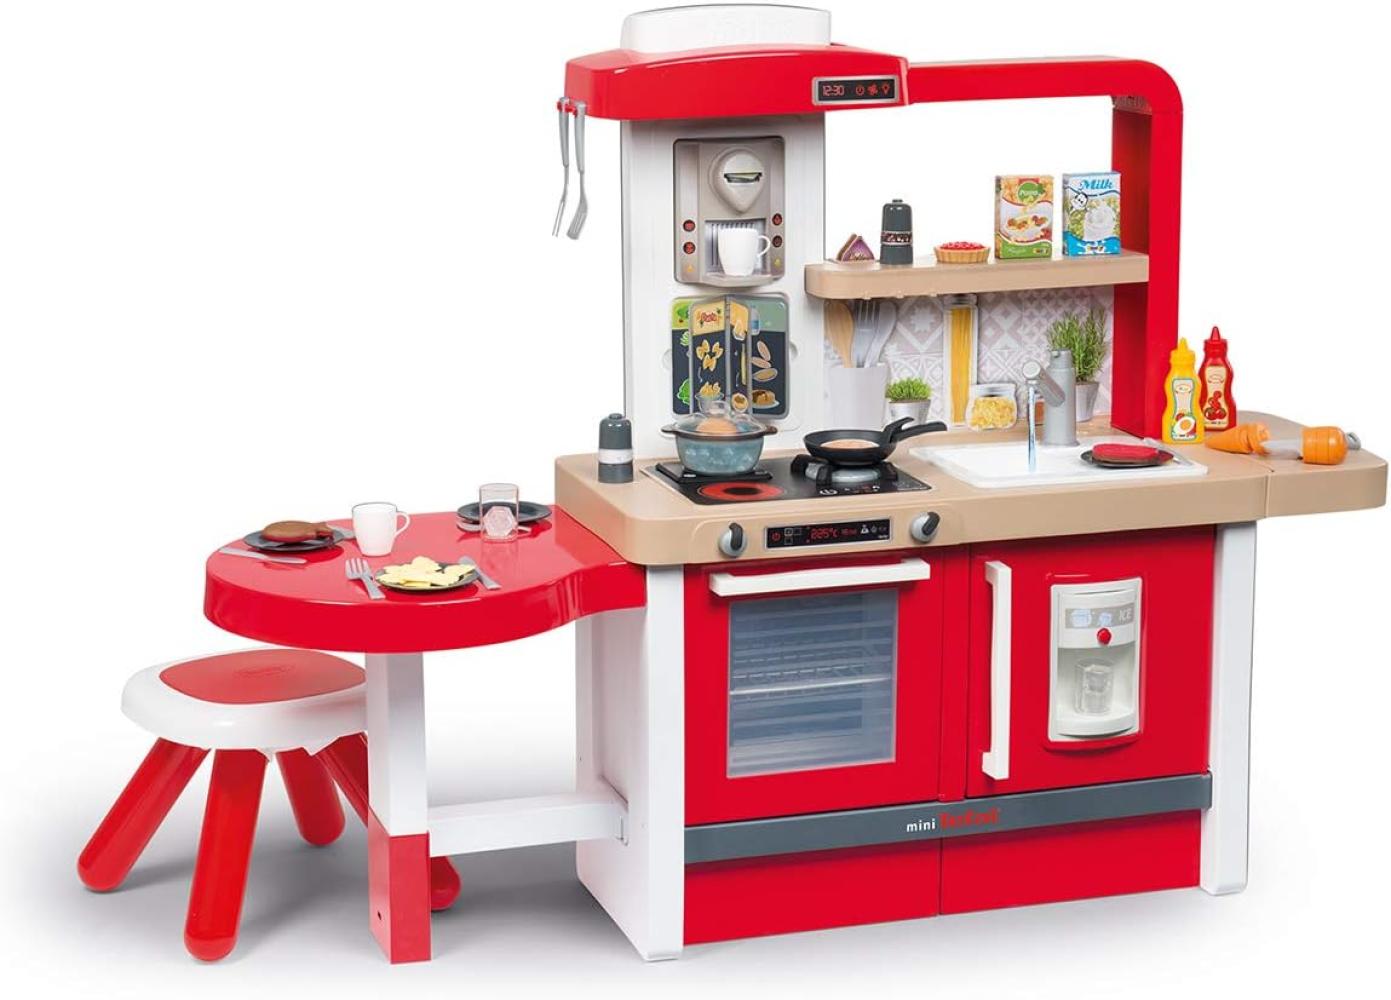 Smoby Tefal Evo Grand Chef XXL-Spielküche für Kinder mit vielen Funktionen, große Sitzecke mit Hocker 43 tgl. Zubehör, für Kinder ab 3 Jahren, rot Bild 1